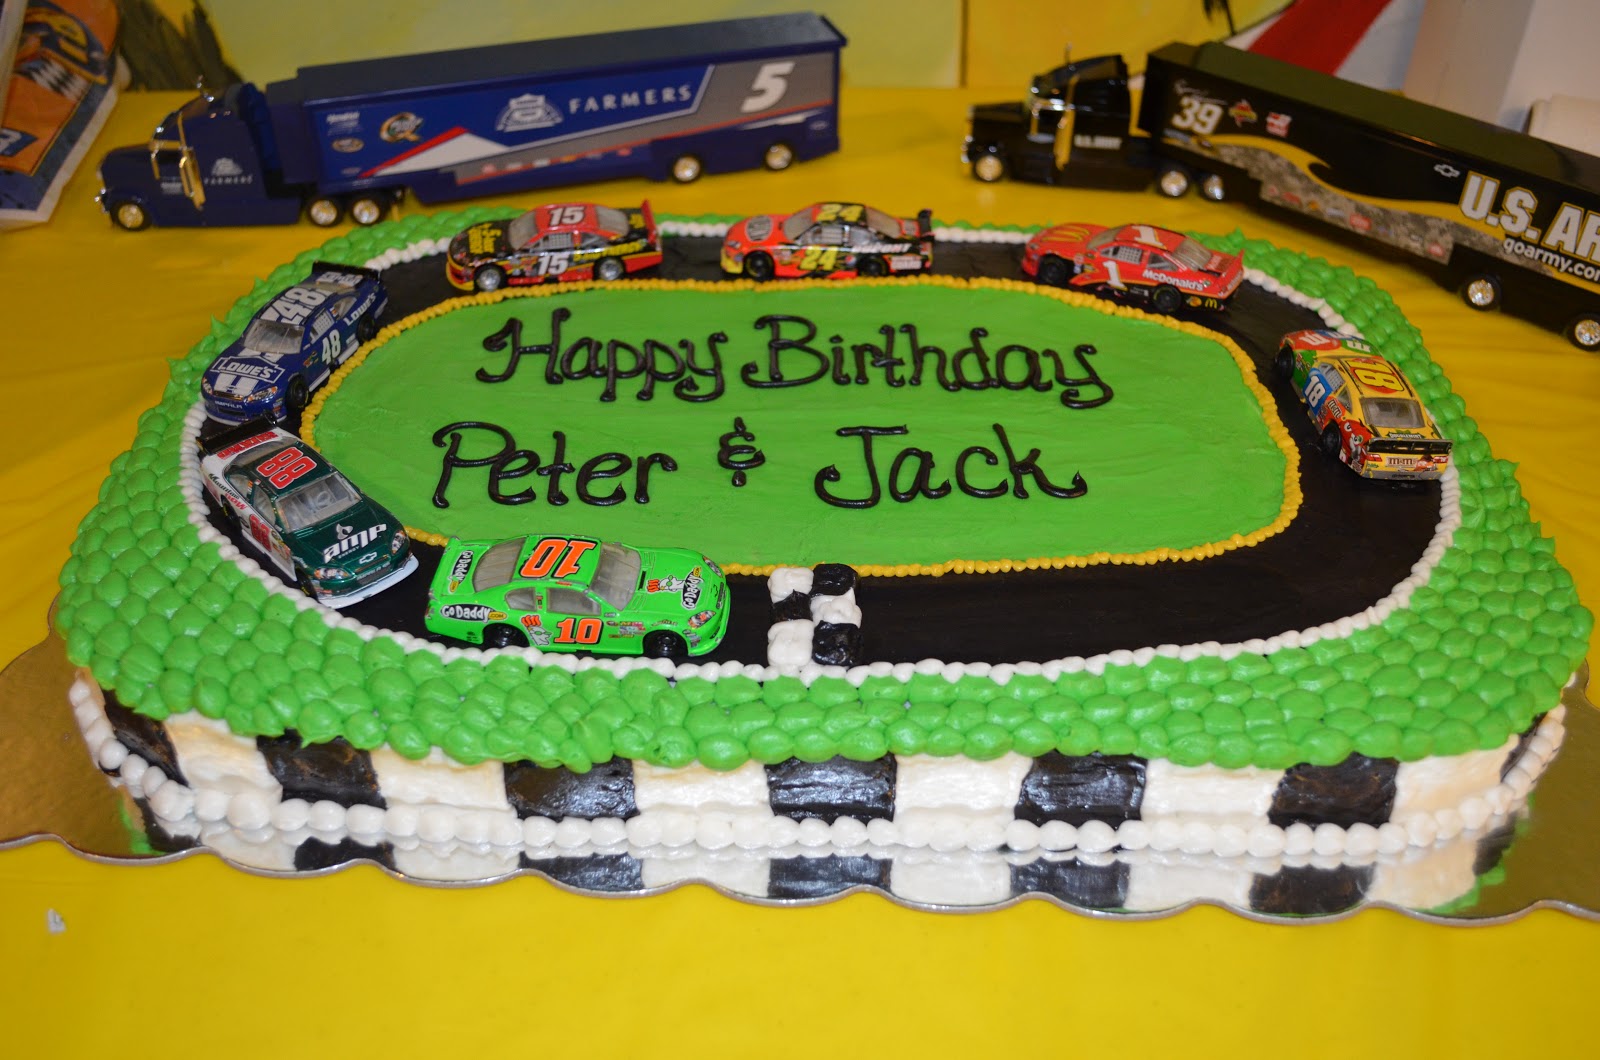 NASCAR Race Car Birthday Cakes